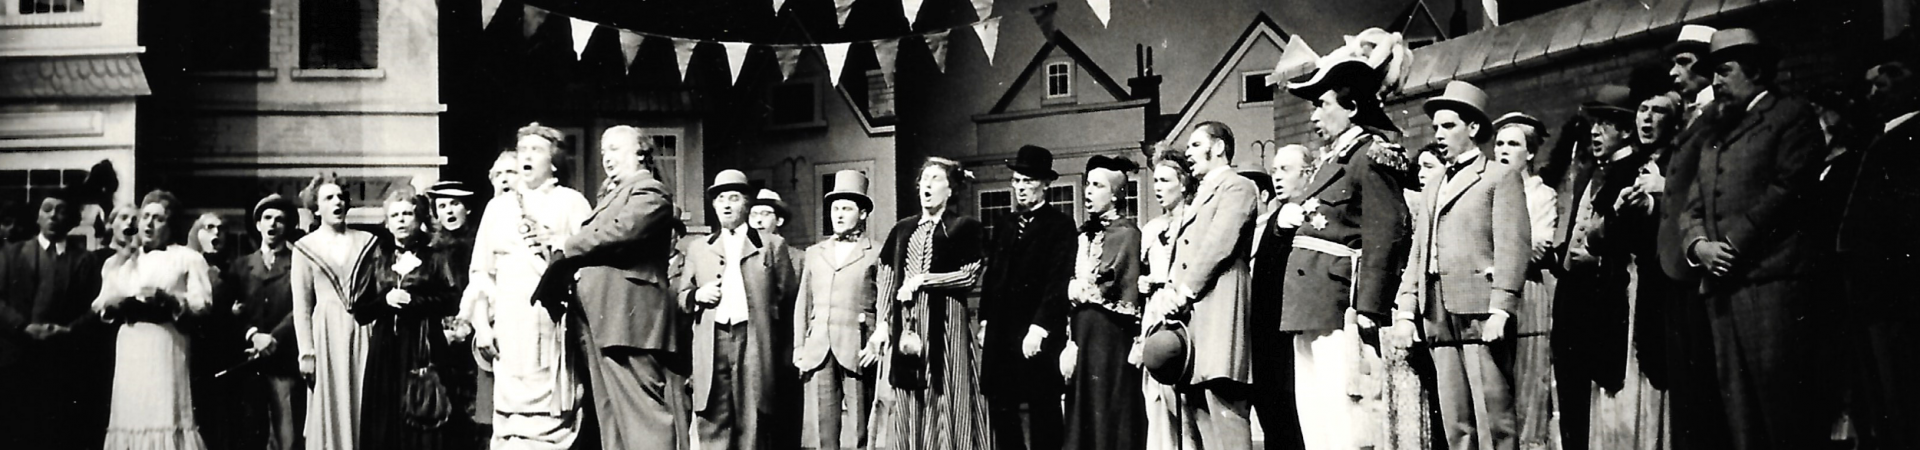 Miss Kölle - Divertissementchen 1958 - Großer Chor auf der Bühne